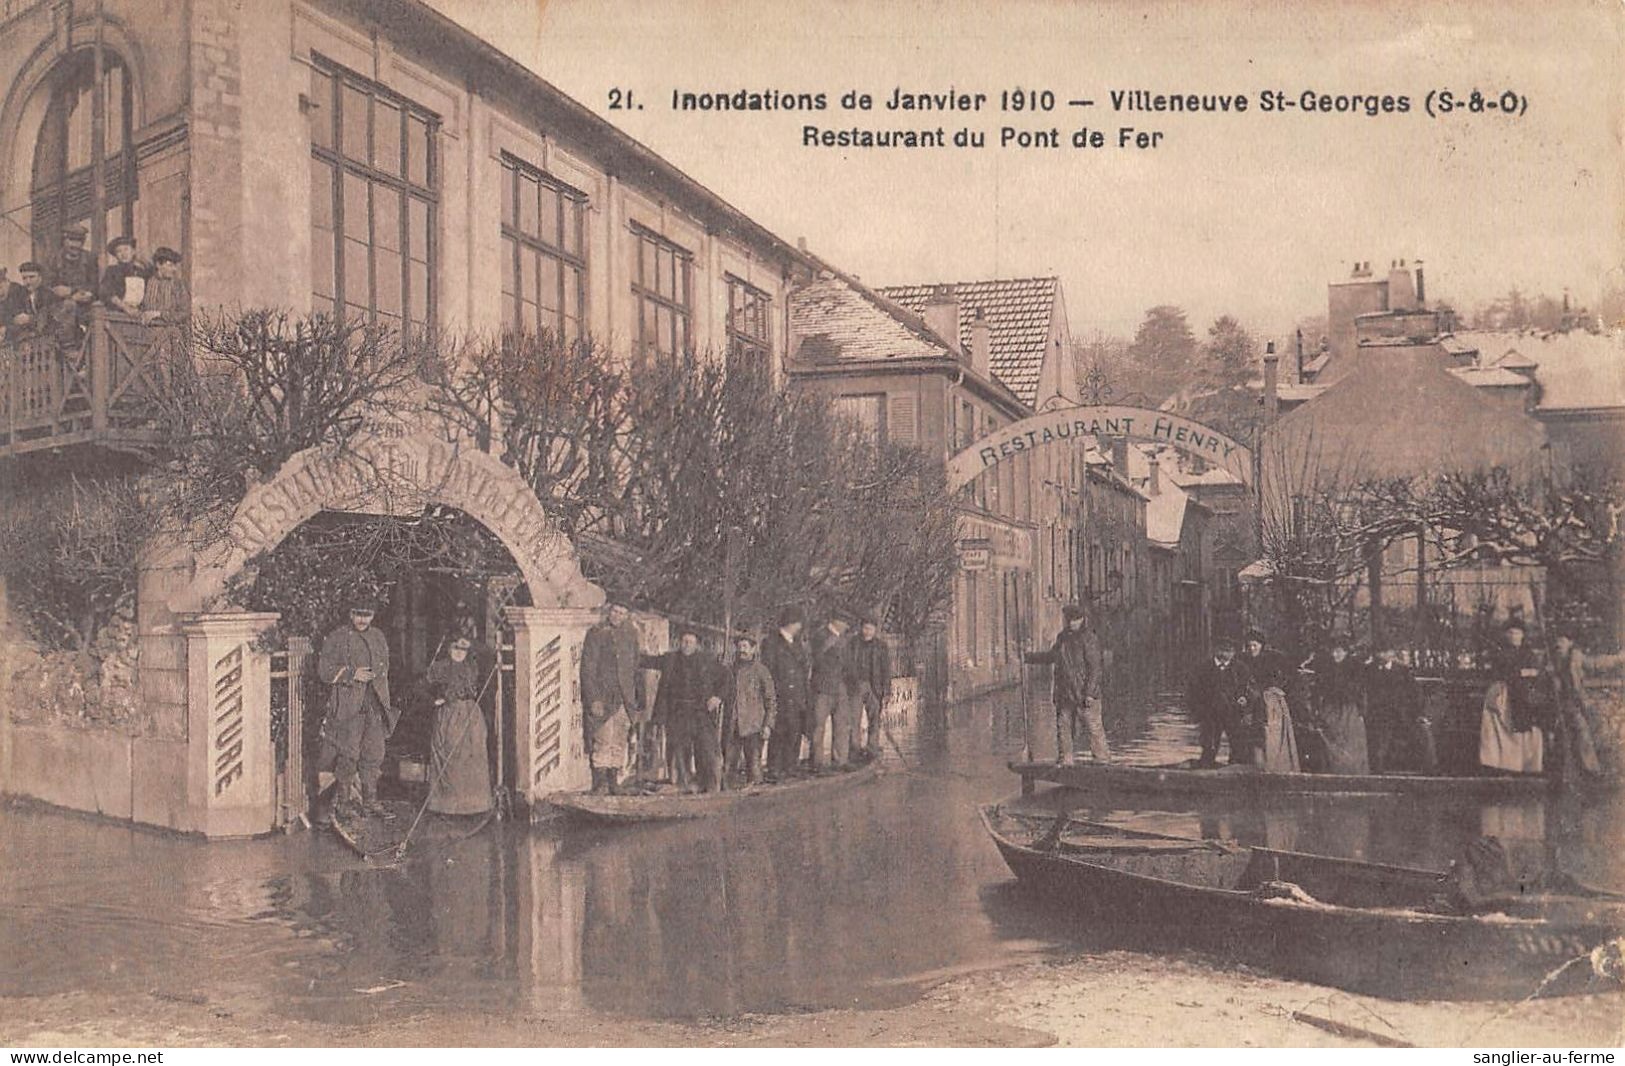 CPA 94 VILLENEUVE SAINT GEORGES / INONDATIONS 1910 / RESTAURANT DU PON DE FER / Cpa Rare - Villeneuve Saint Georges